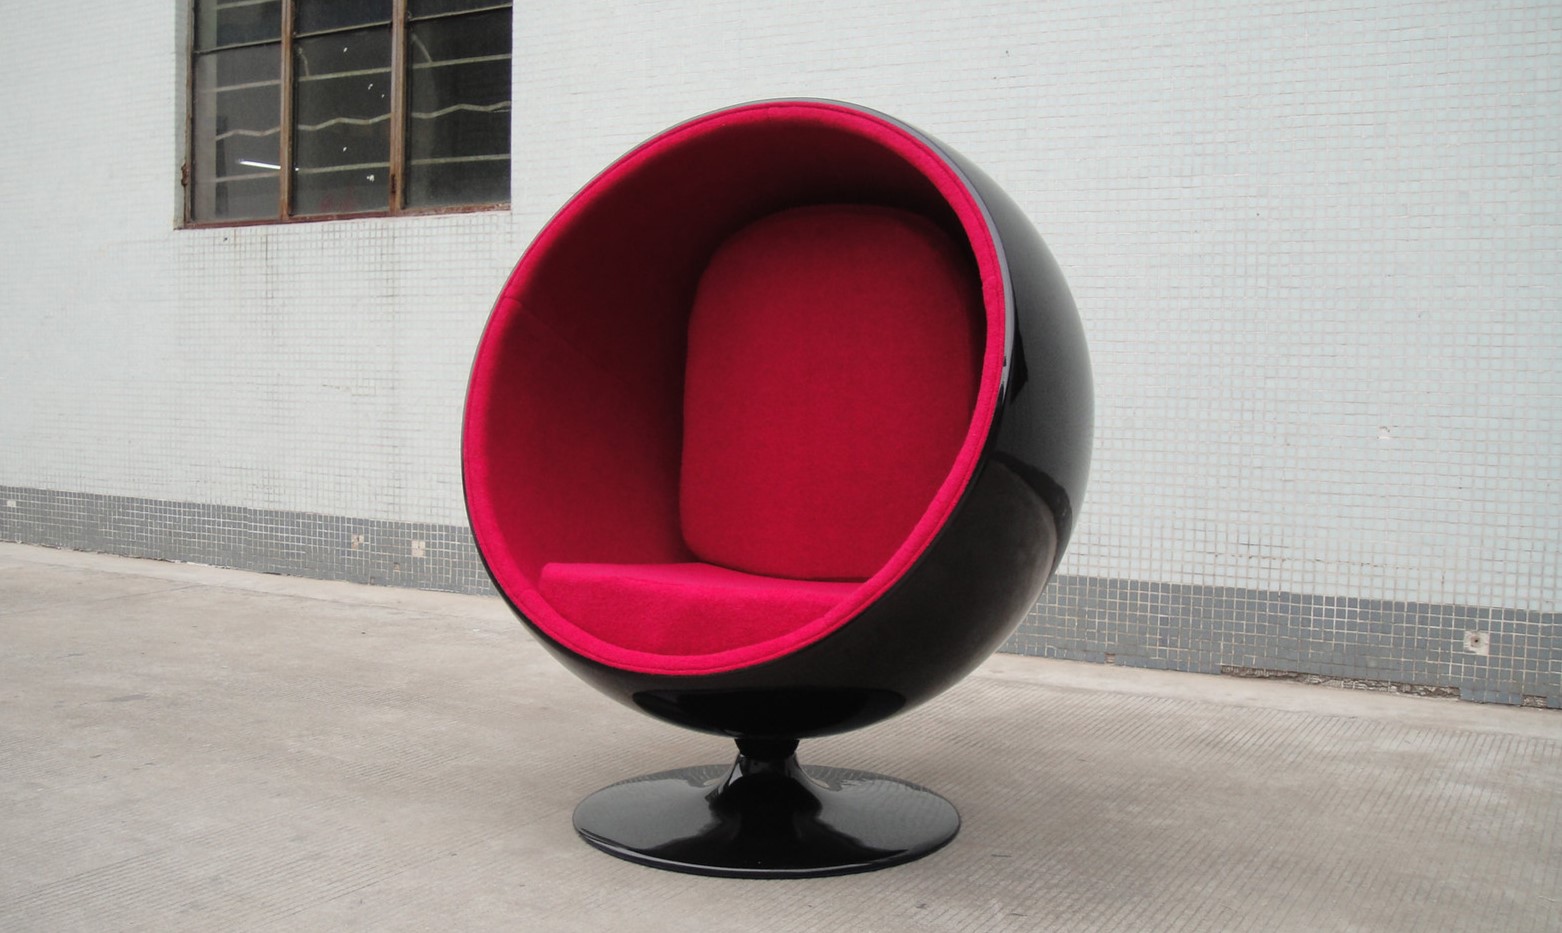 Черно-красное дизайнерское кресло можно сделать акцентным элементом интерьера